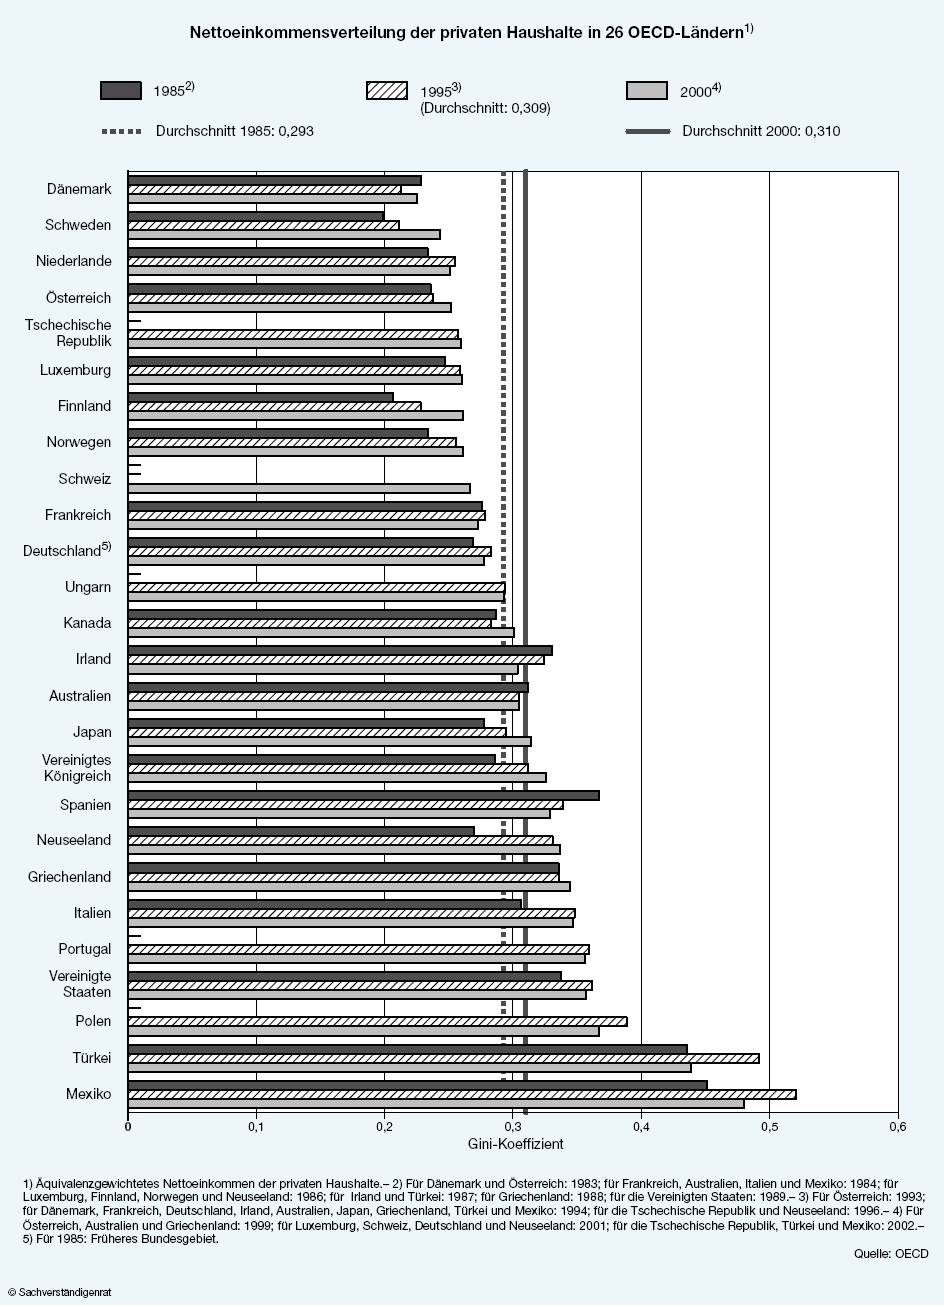 5. Ungleichheit: Vergleich zwischen Ländern Quelle: Sachverständigenrat zur Begutachtung der gesamtwirtschaftlichen